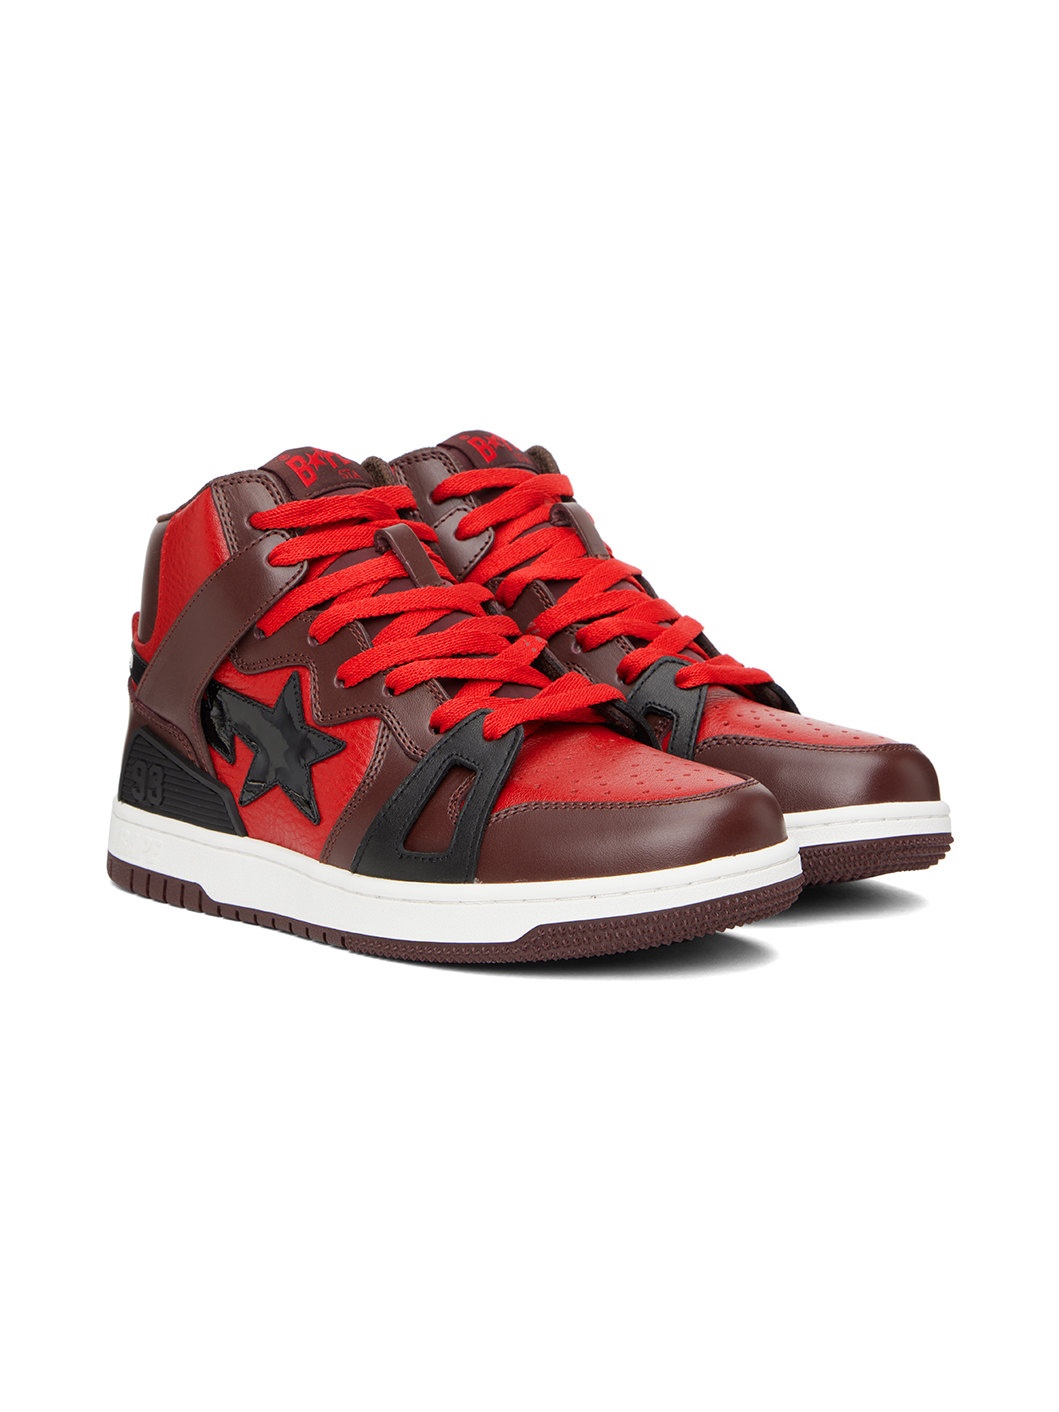 Red & Brown Sta 93 Hi Sneakers - 4